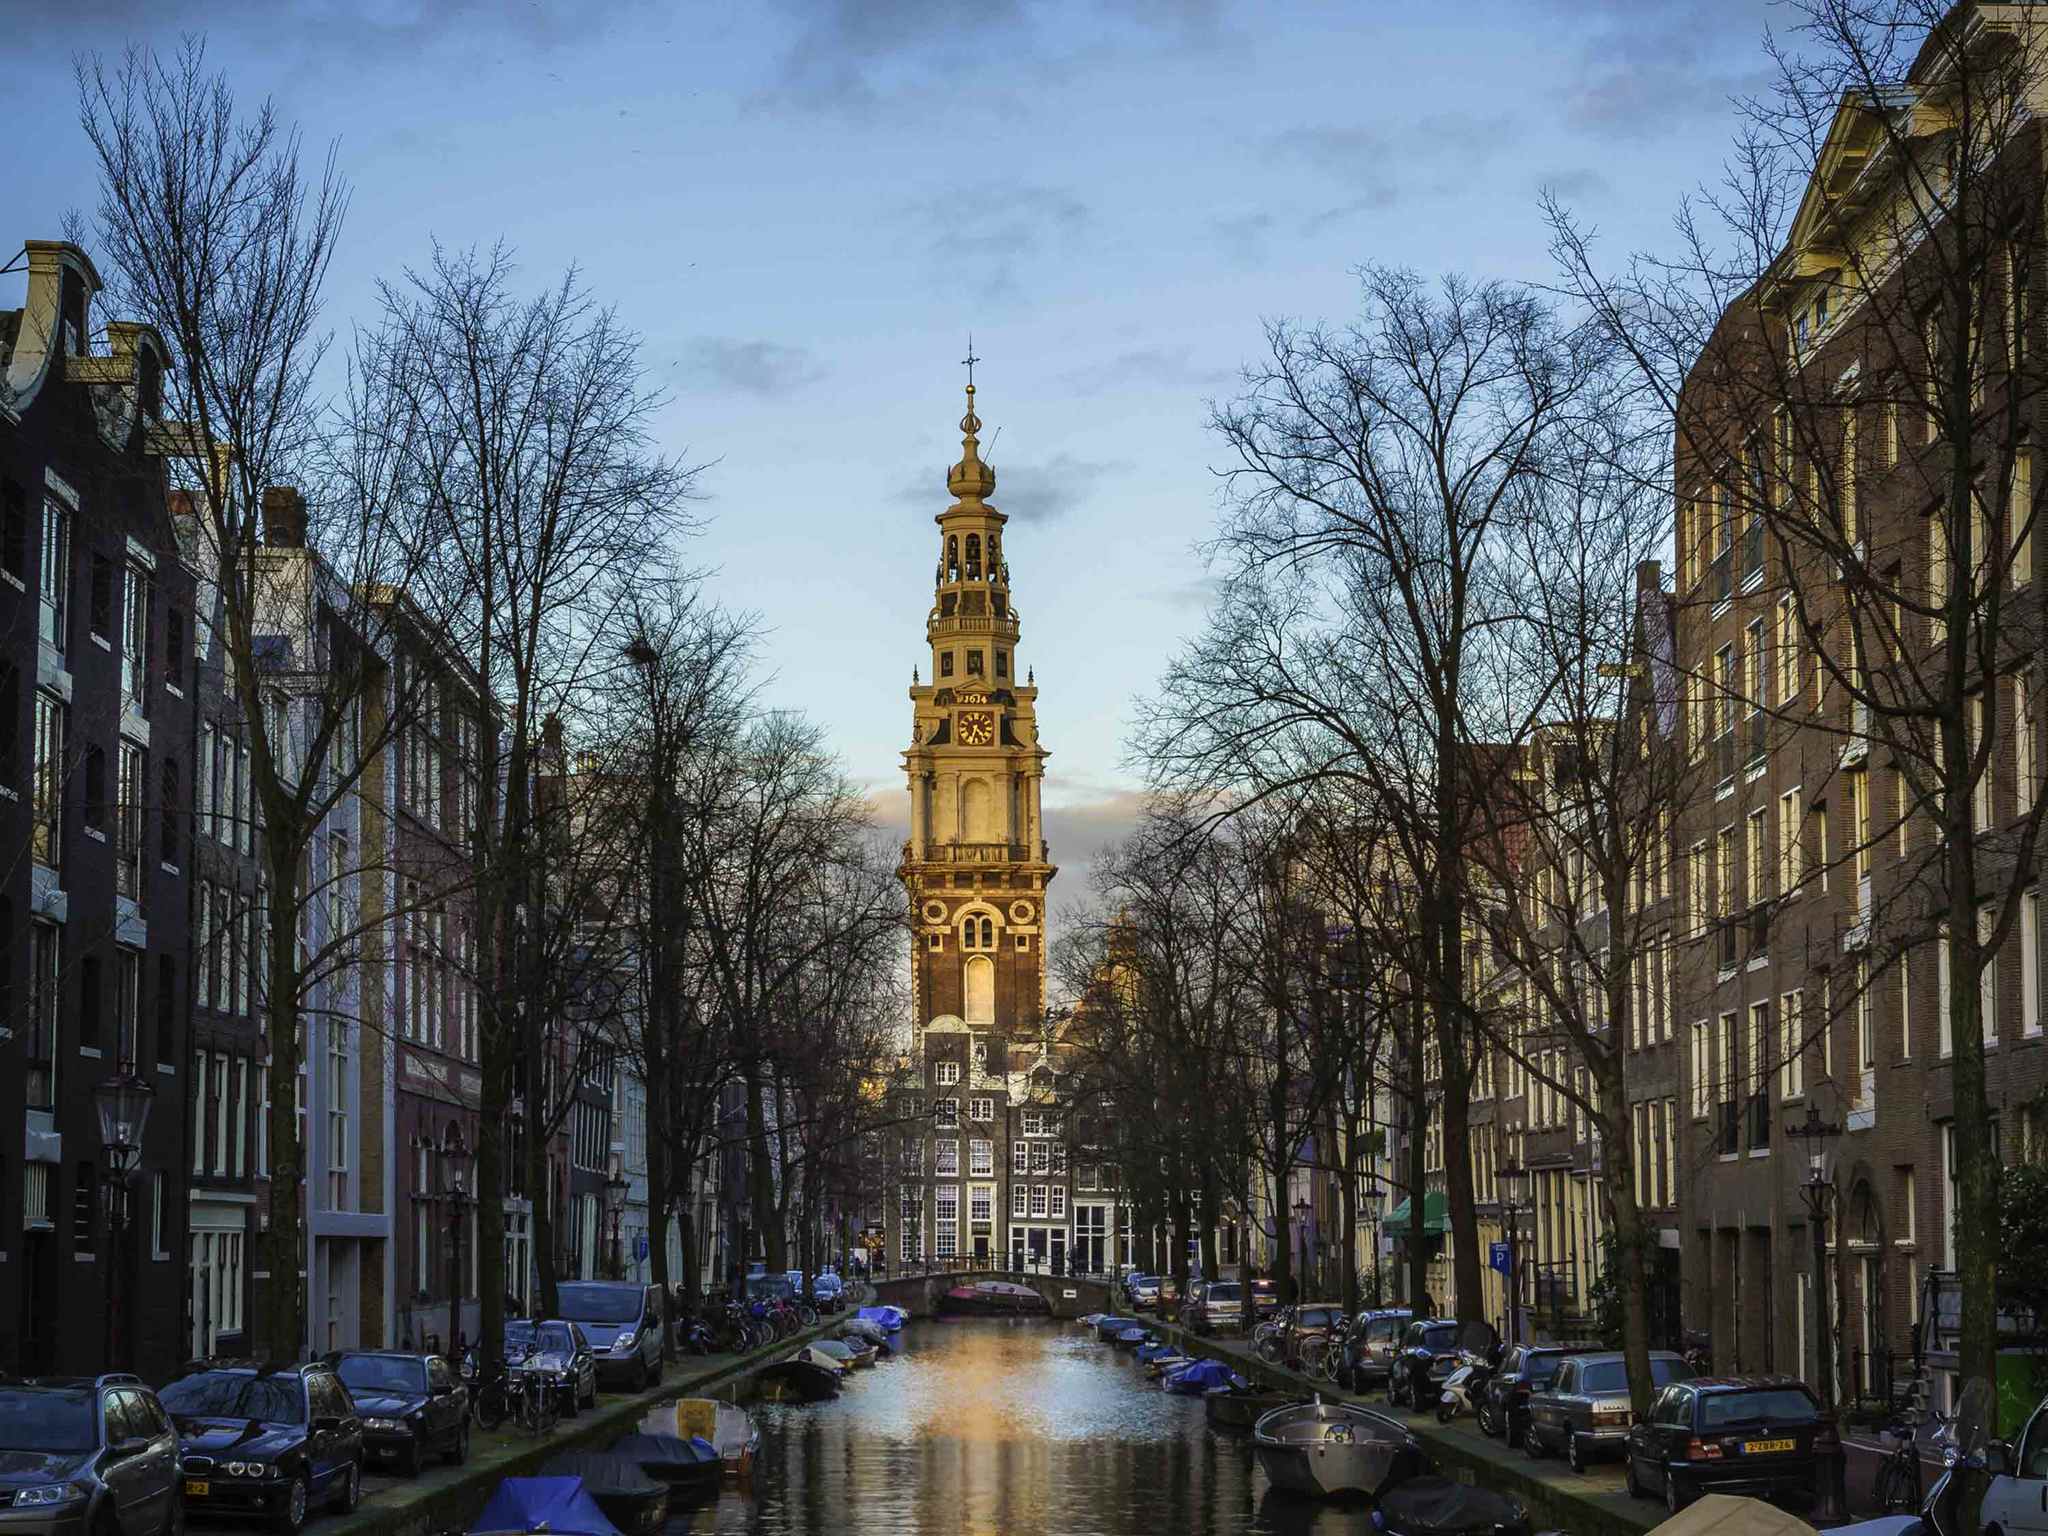 Cheap Hotel Amsterdam South - ibis budget - Near RAI